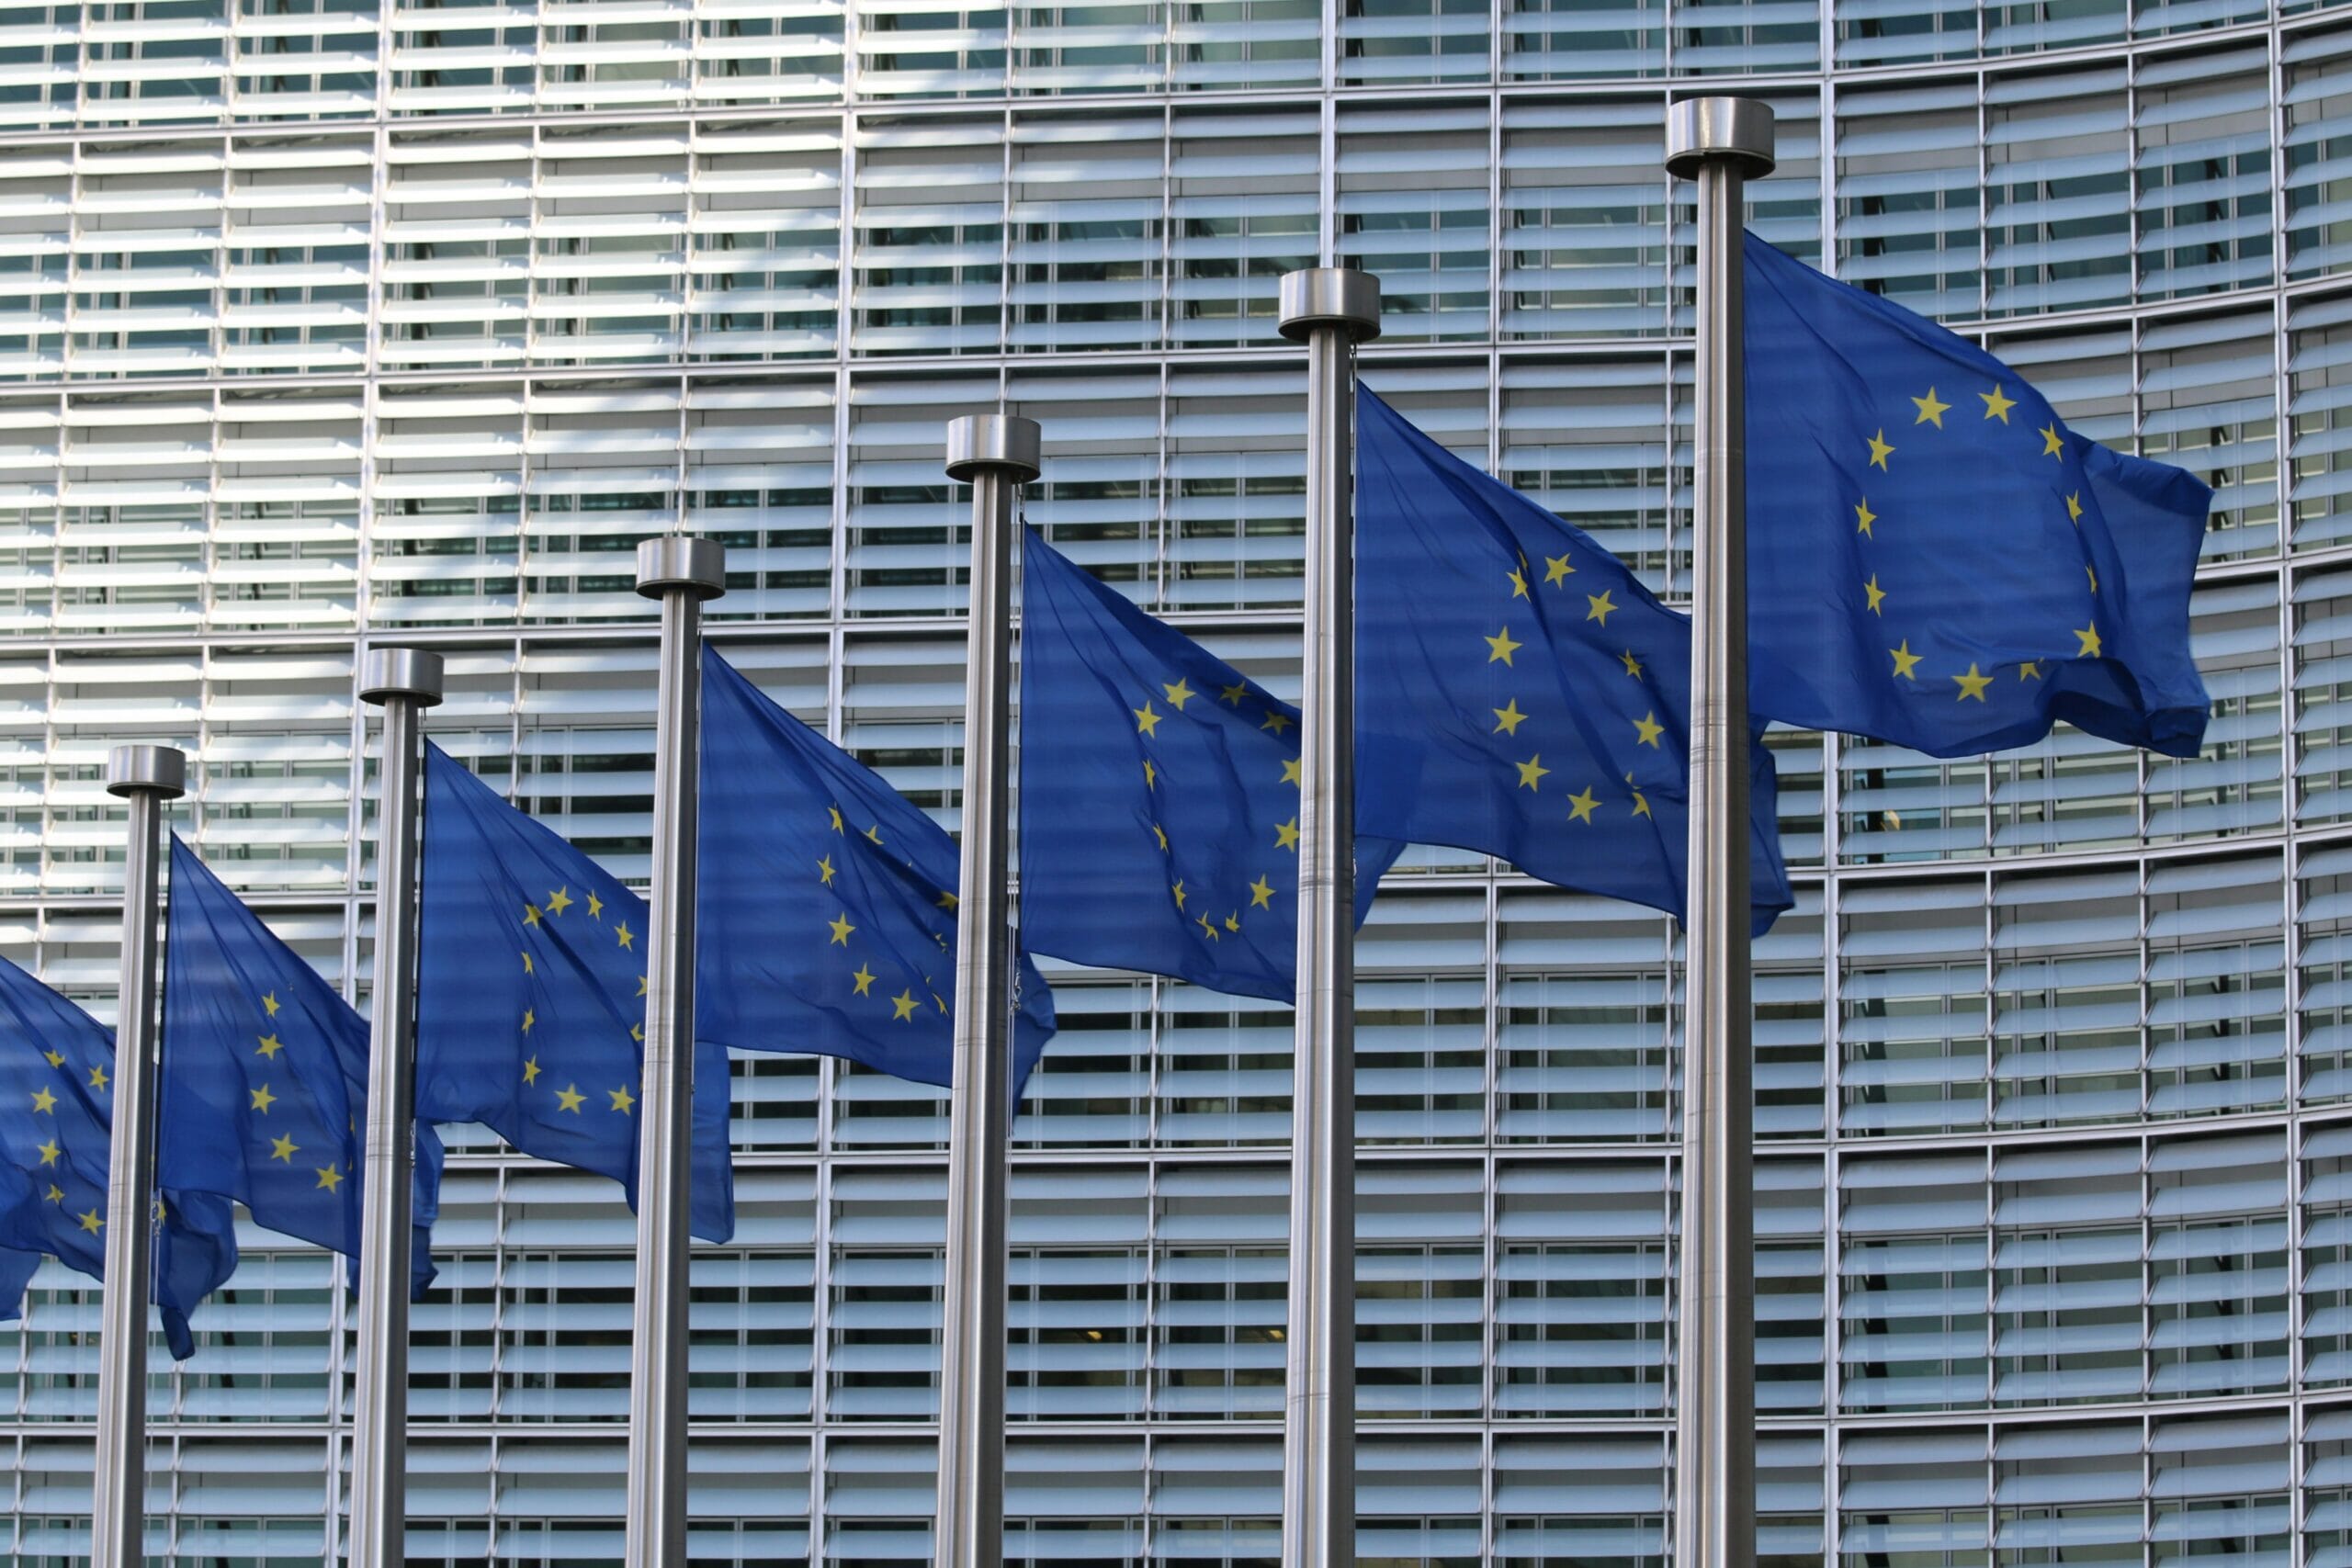 Flaggen der Europäischen Union wehen vor dem Gebäude des EU-Parlaments mit horizontalen Jalousien.